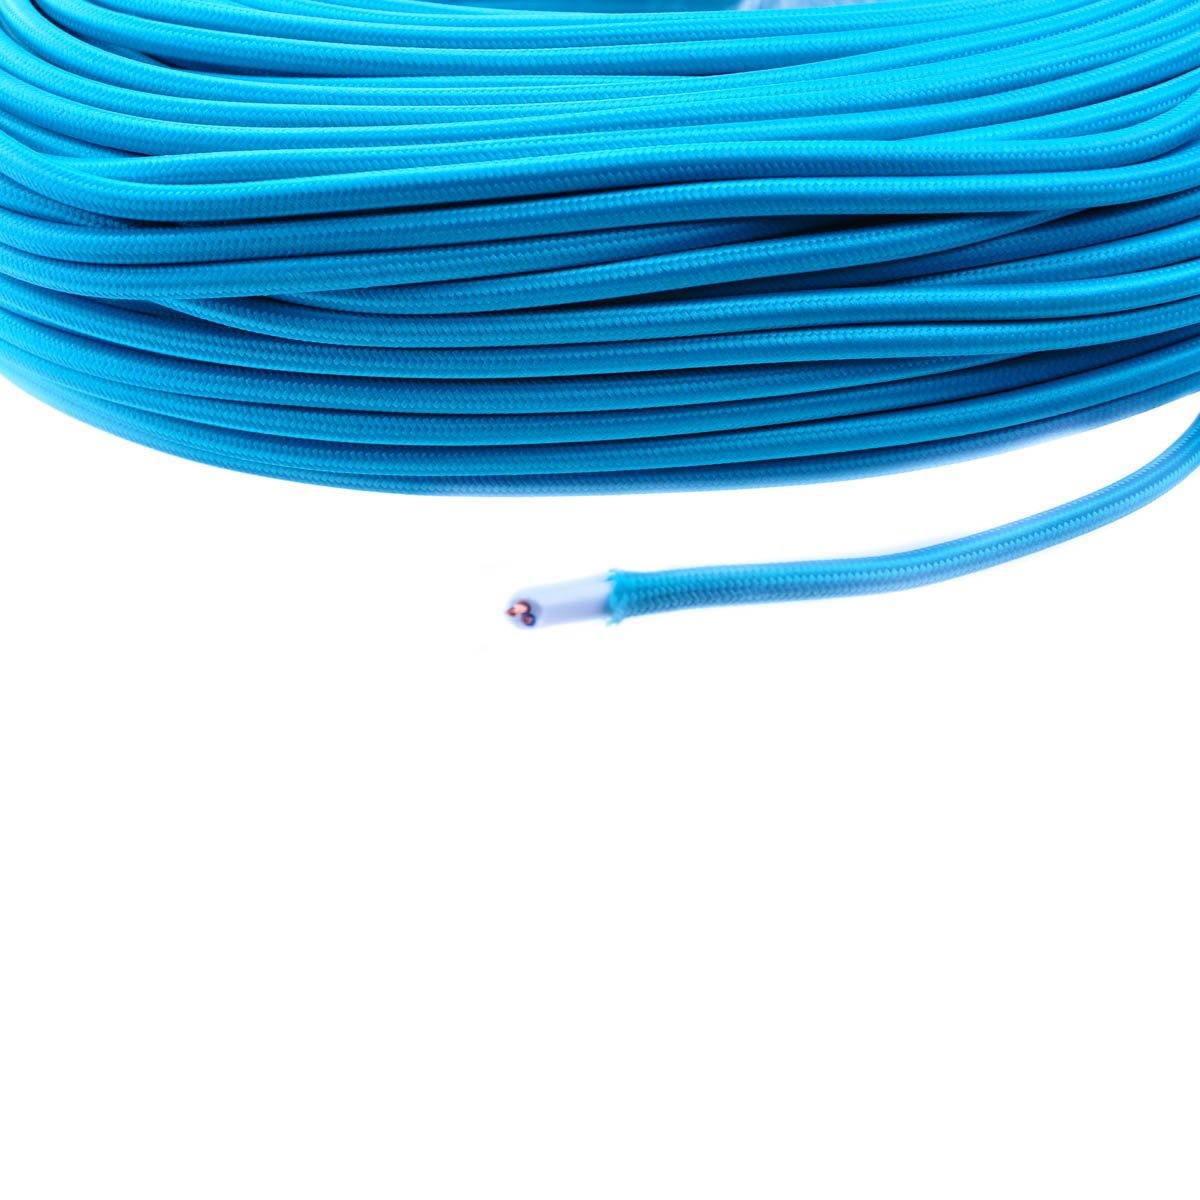 Cablu electric colorat turcoaz - 1 metru 2020, Domicilio